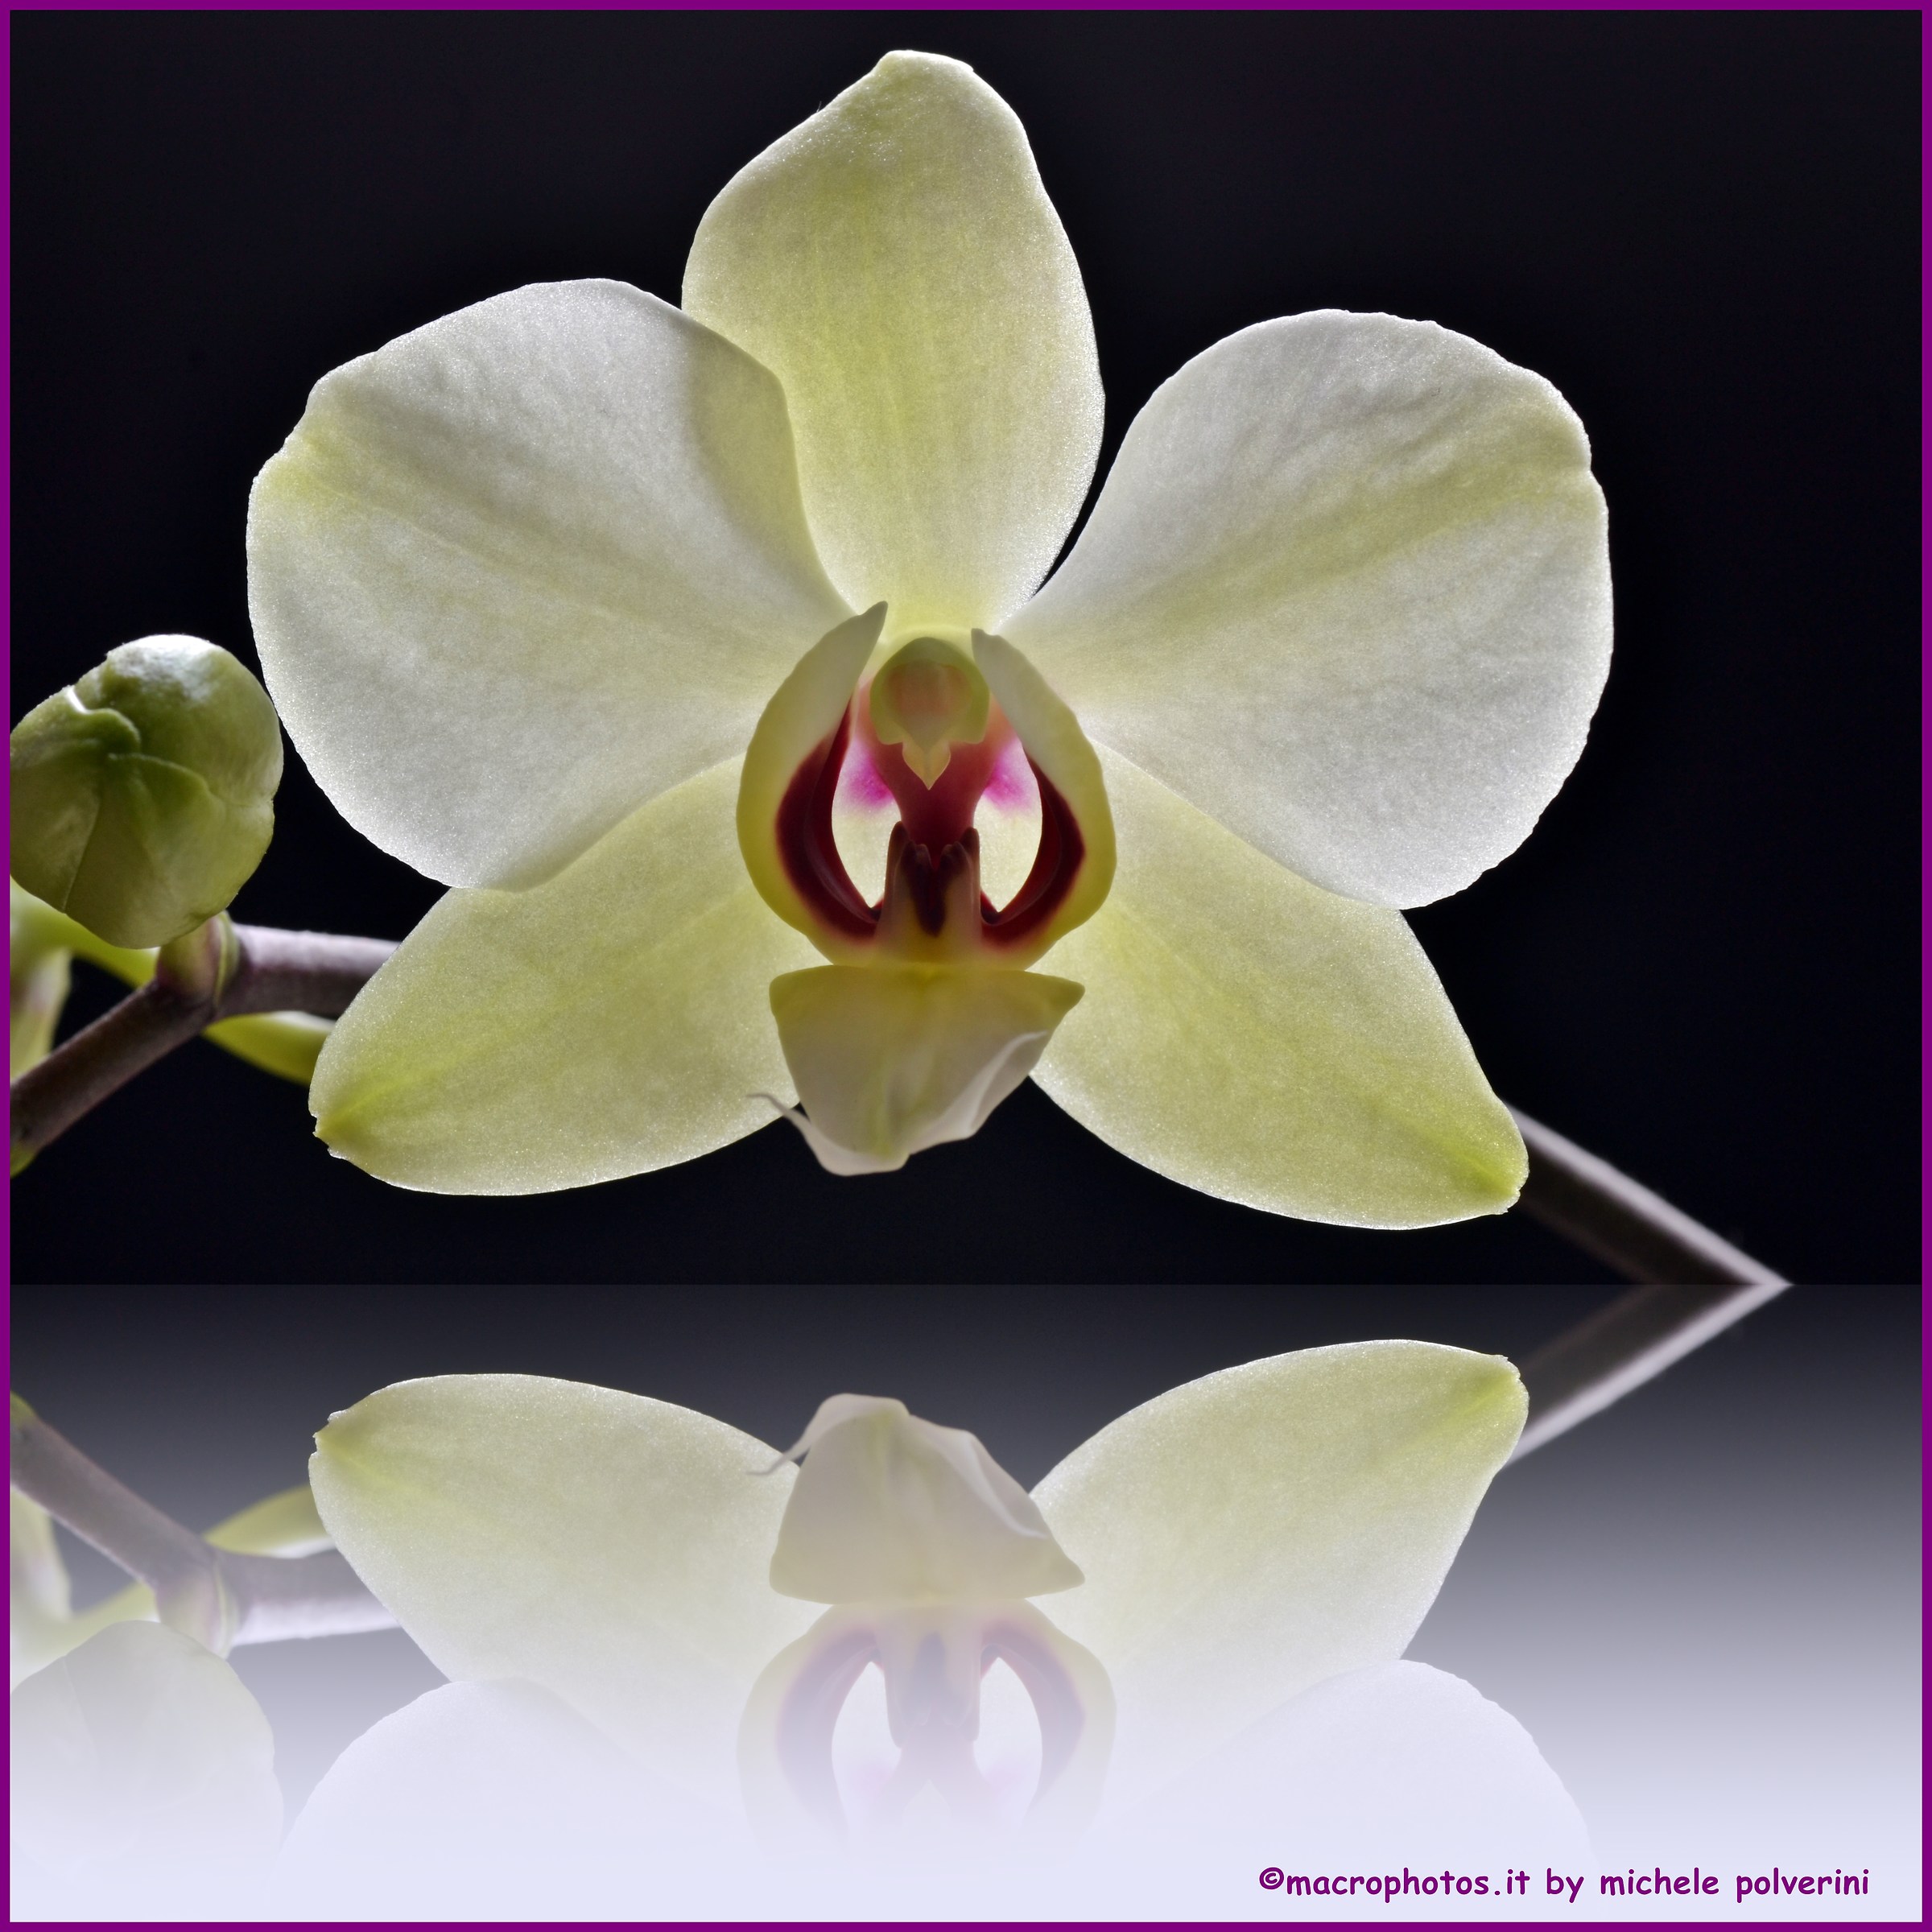 Il riflesso dell'orchidea bianca...